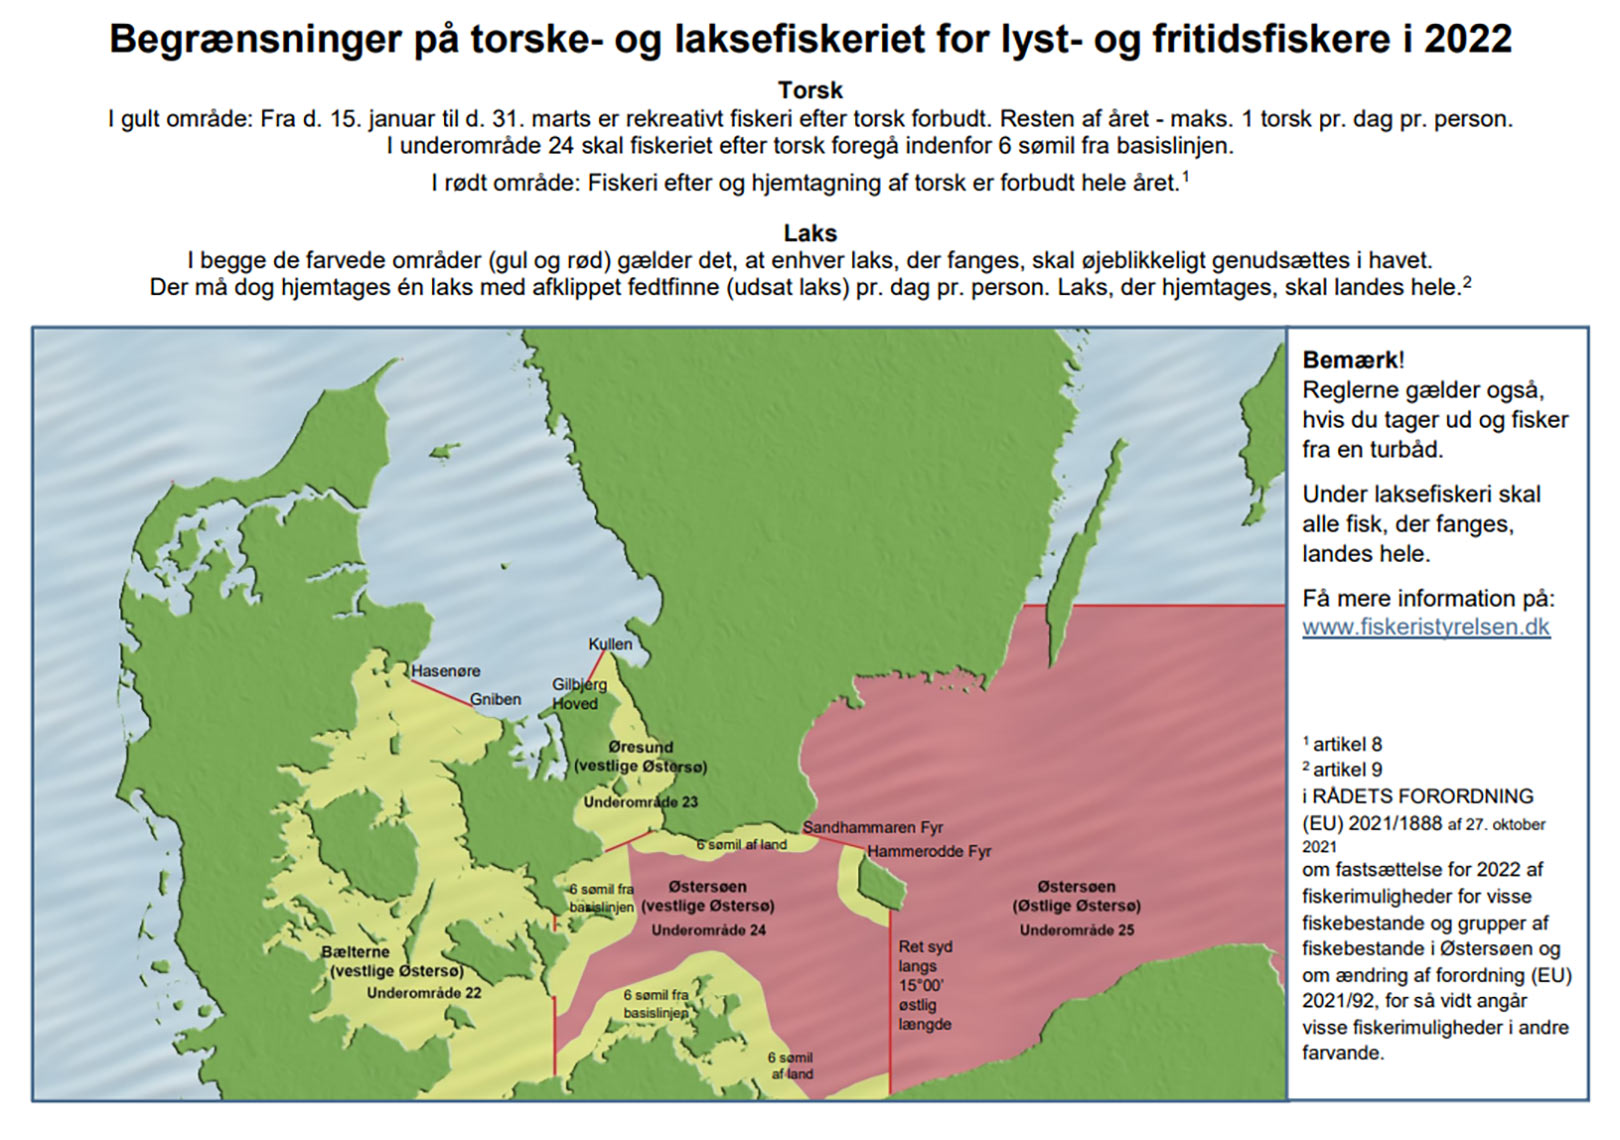 Regler for torske og laksefiskeri i 2022. Kilode: Fiskeristyrelsen.